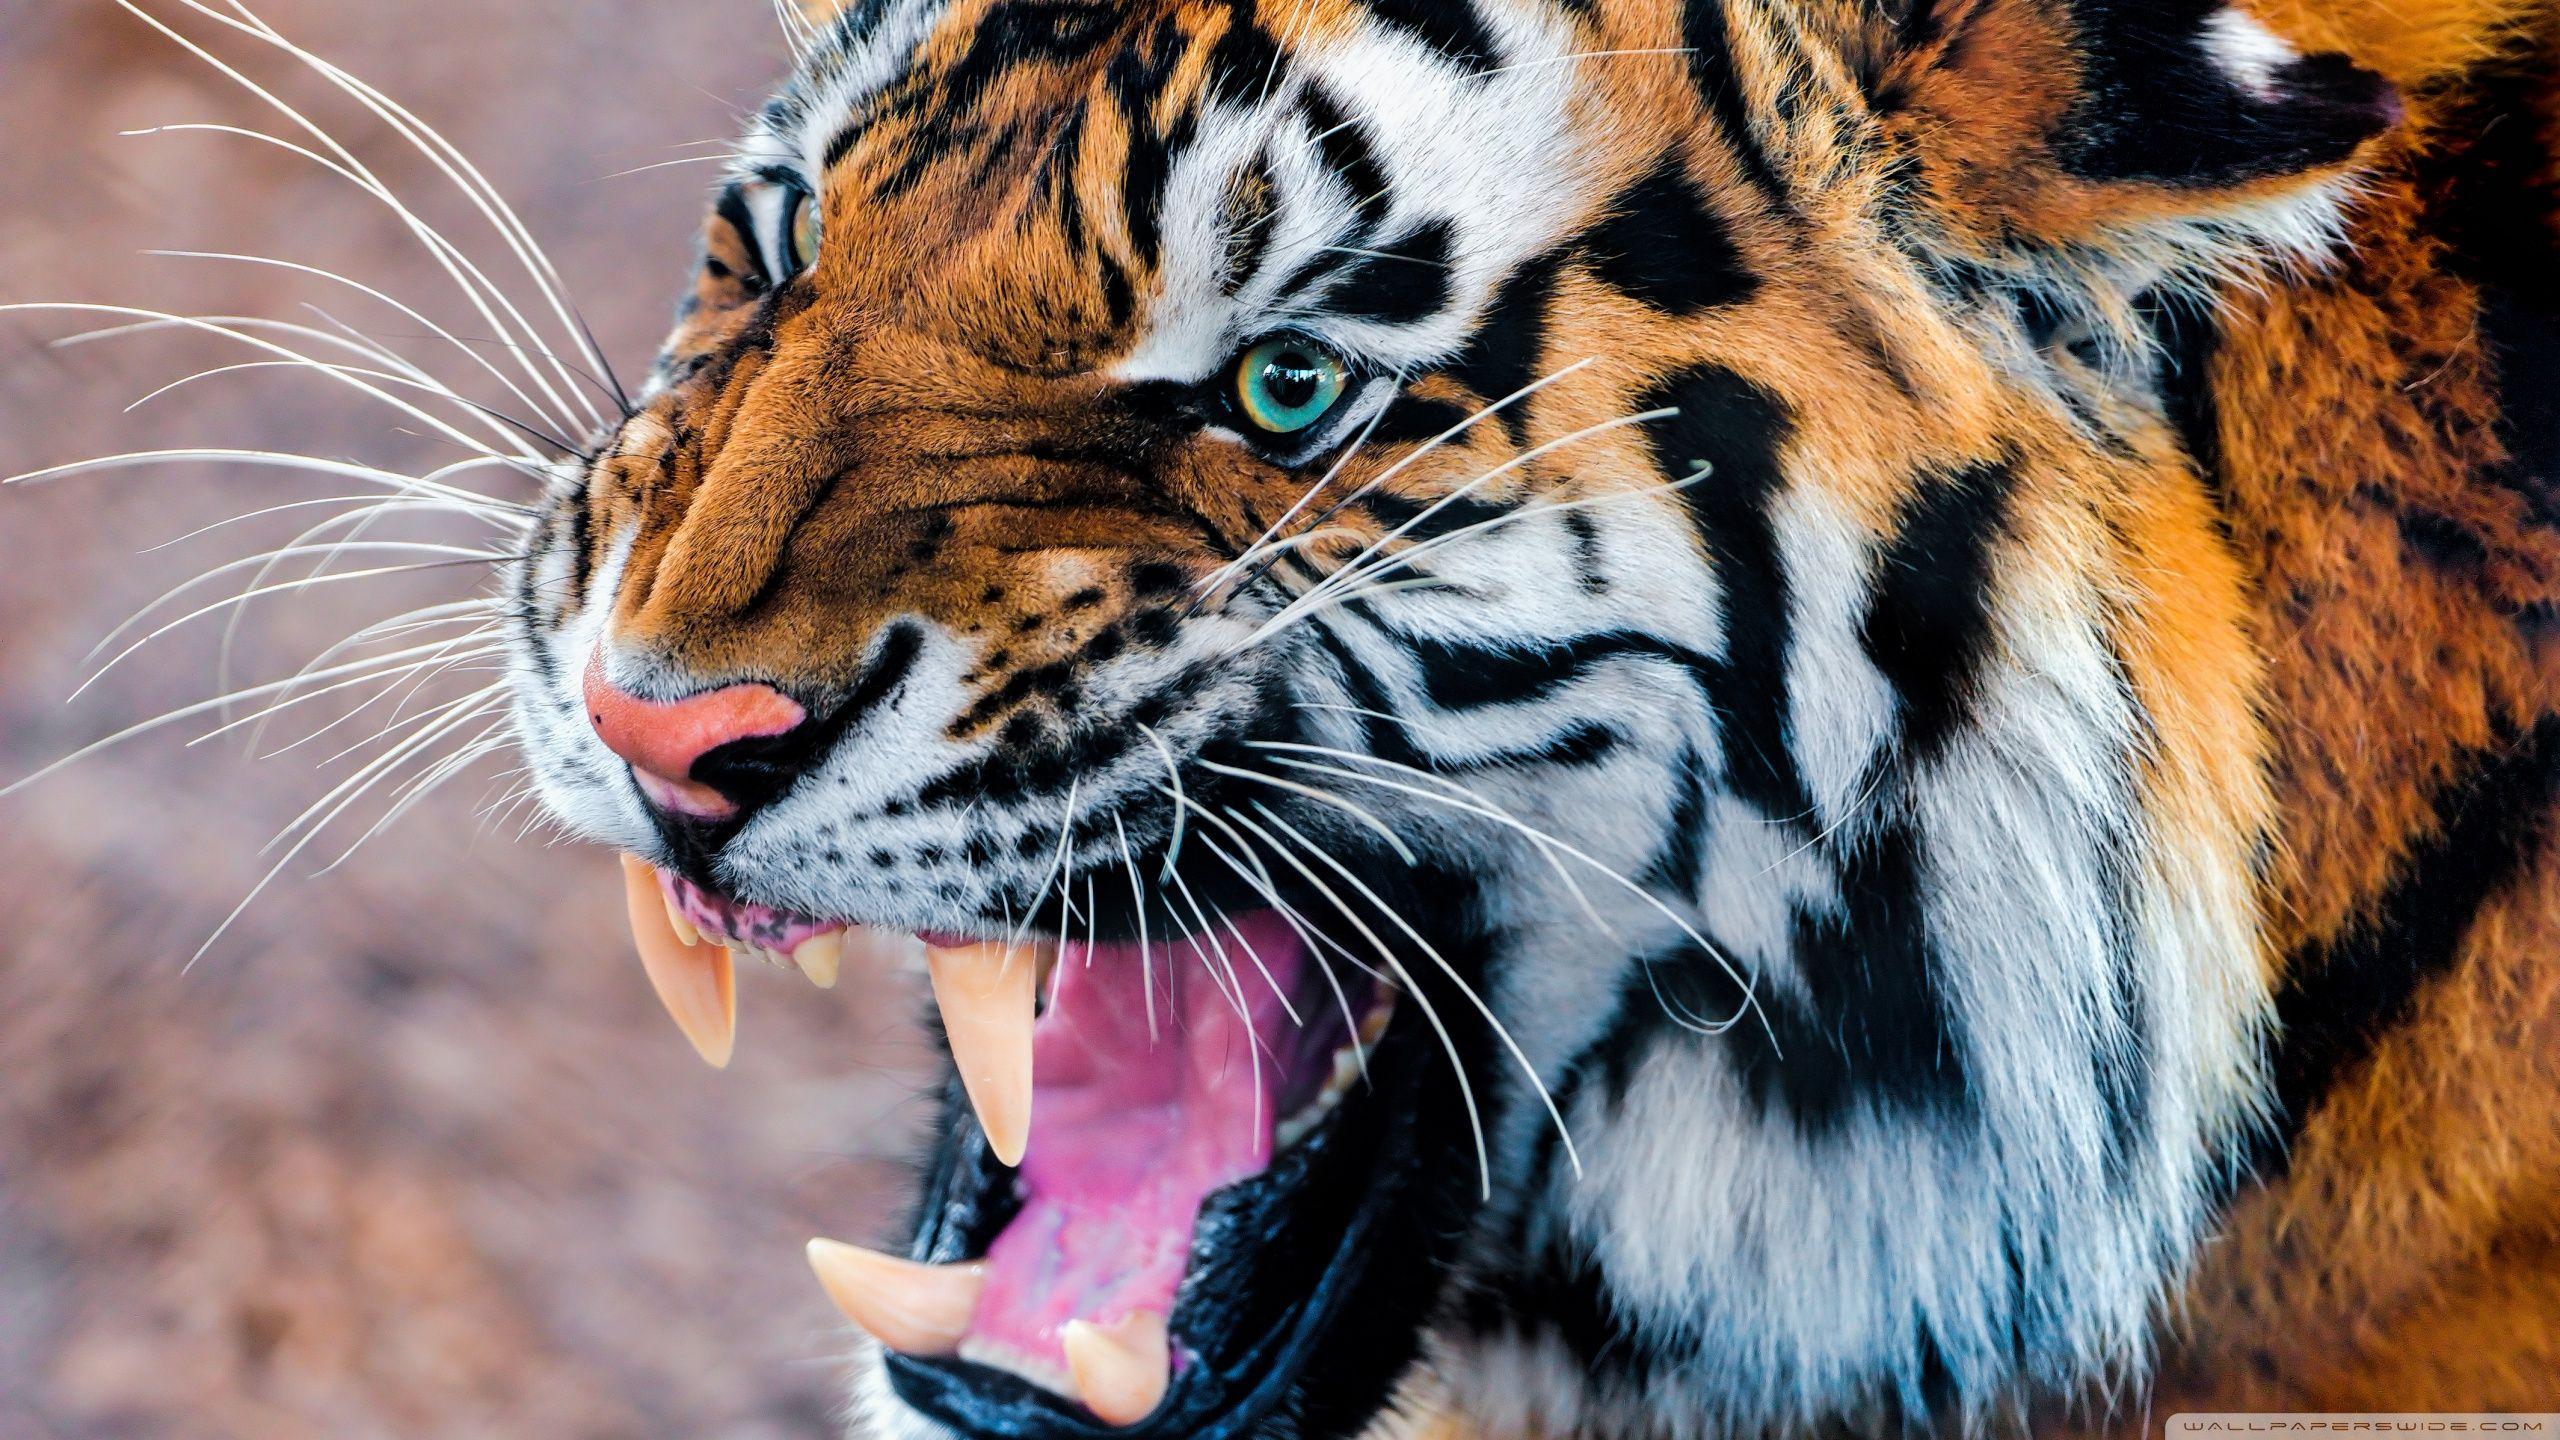 Angry tiger [Wallpaper]